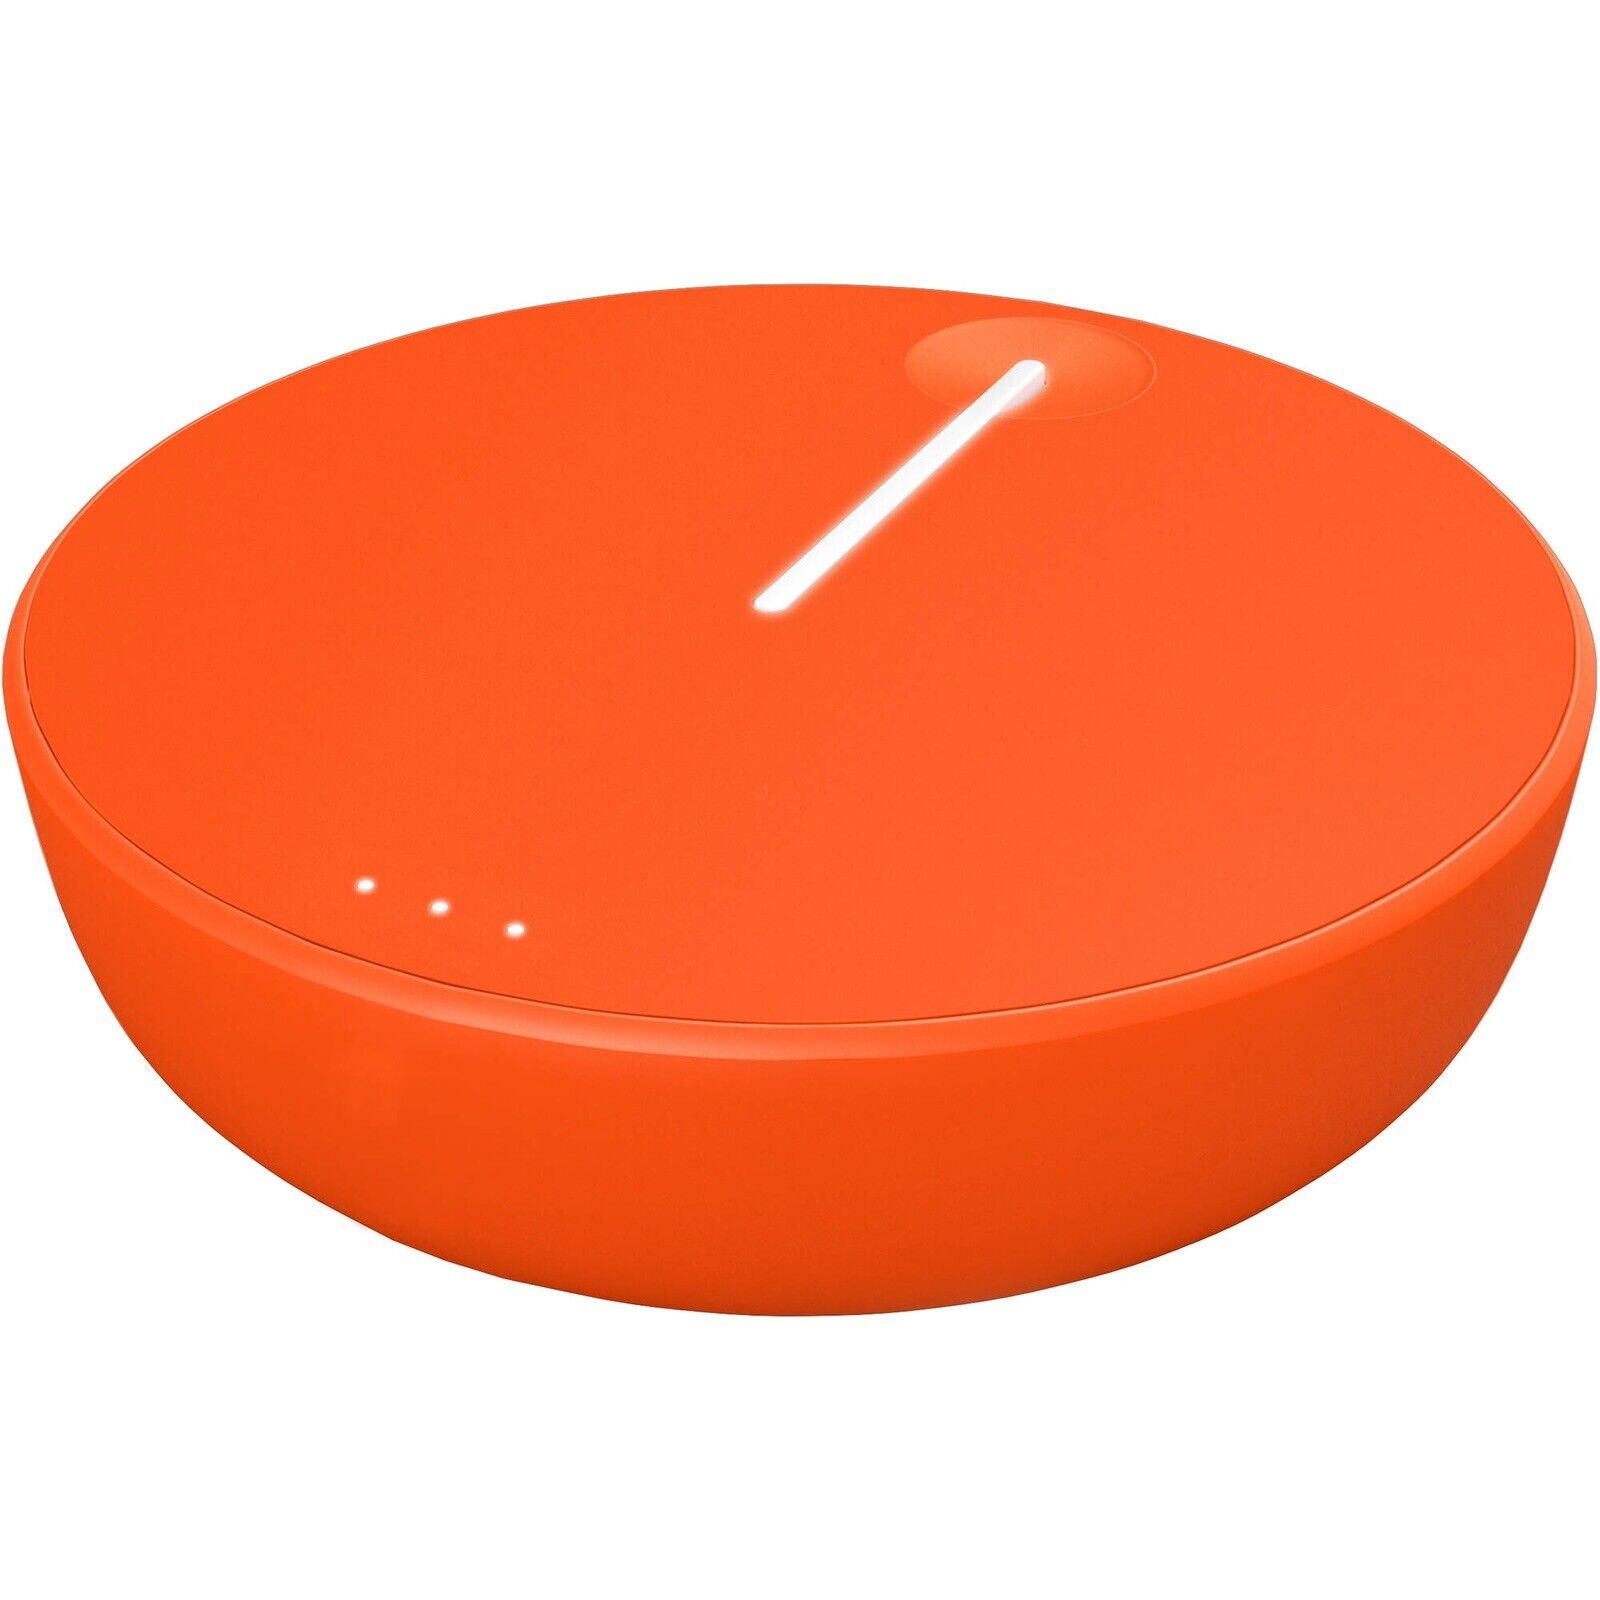 Skyroam HS600000 4G LTE Mobile Hotspot Router - Orange